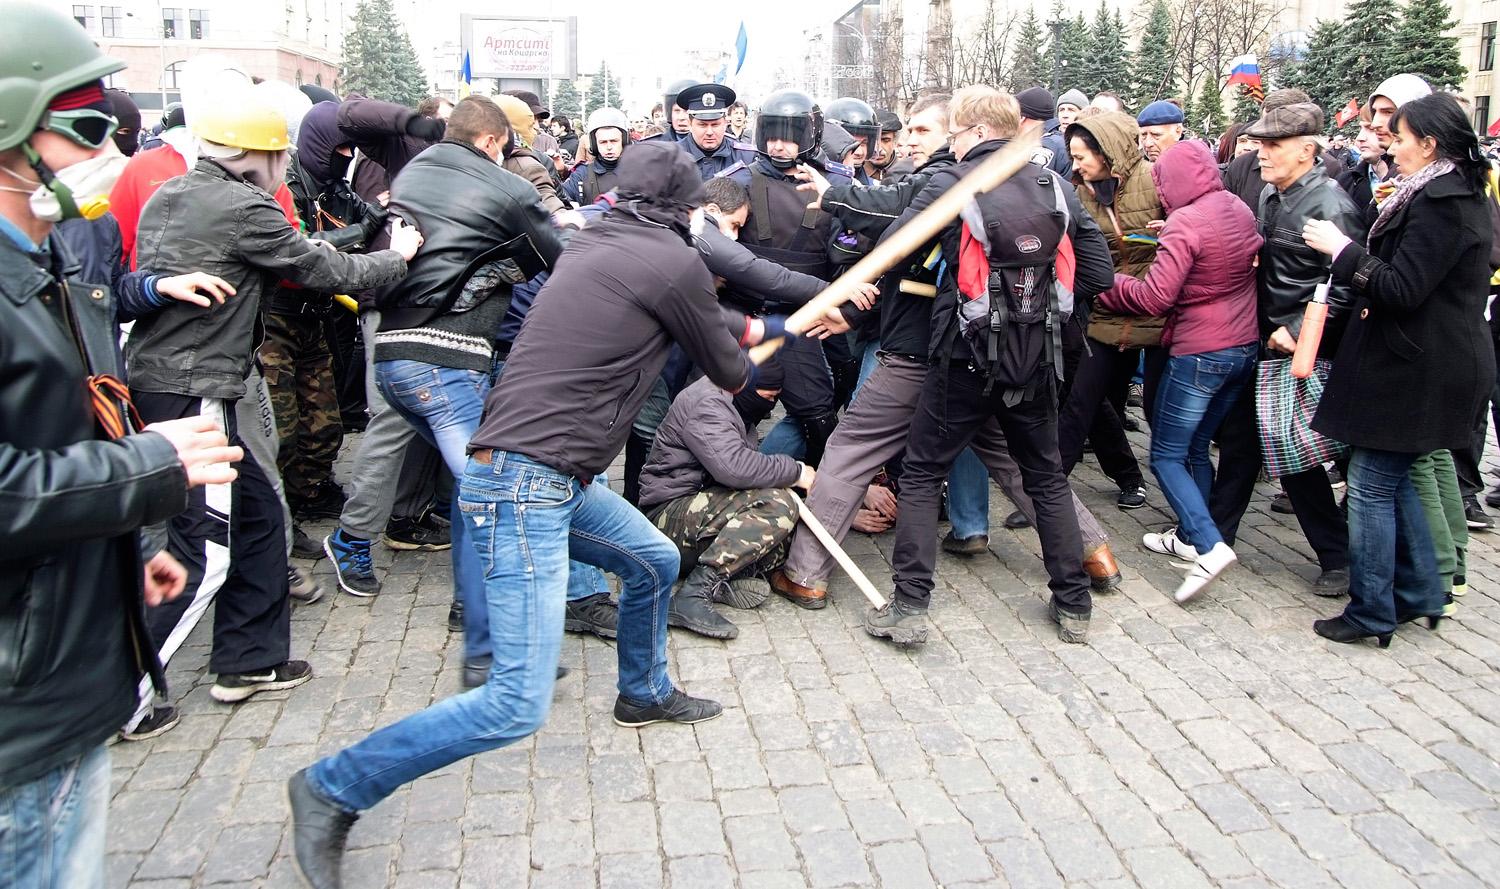 Orosz- és ukránpárti tüntetők összetűzése Harkivban. A kivezényelt biztonságiaknak nem mindig sikerült szétválasztaniuk őket